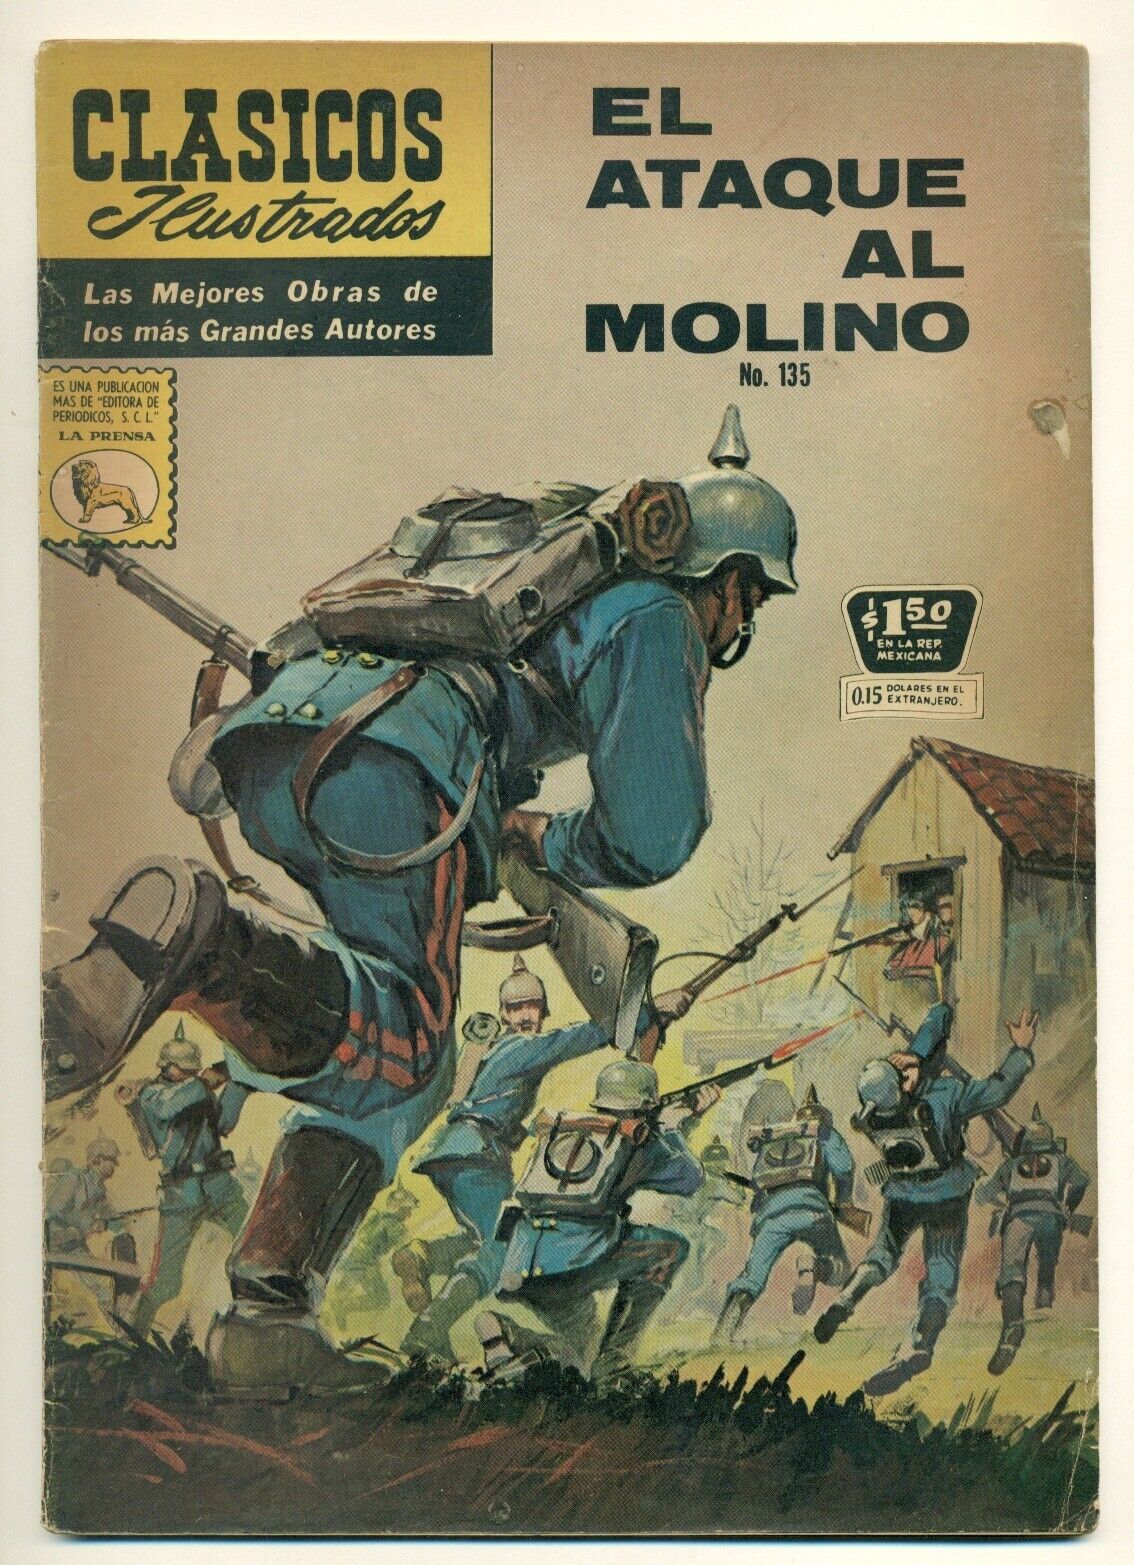 CLASICOS ILUSTRADOS #135 El Ataque al Molino, La Prensa Comic 1965